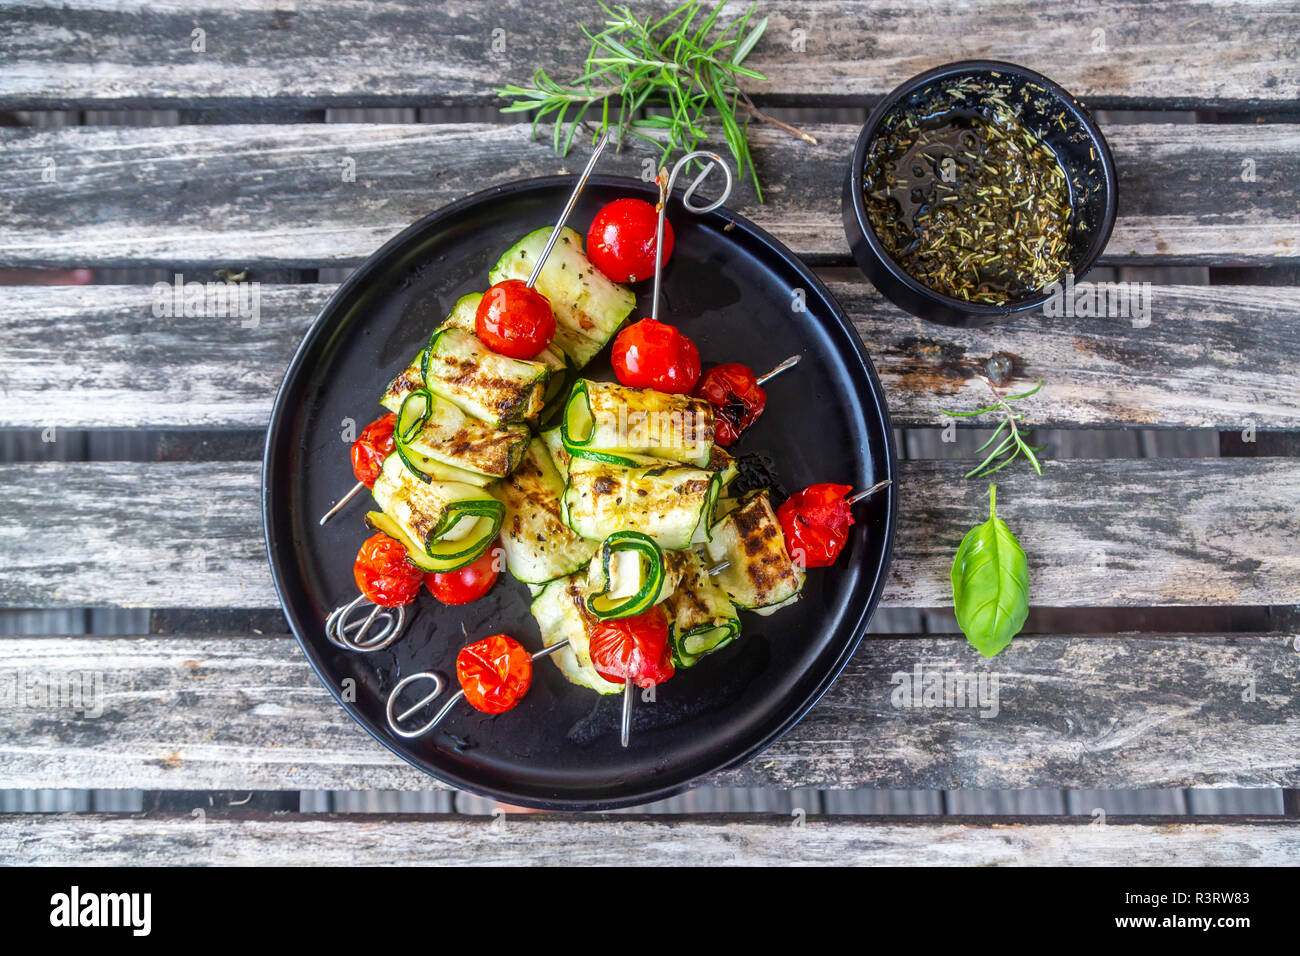 Gegrillten vegetarischen Grill Spieße, Tomaten, Schafskäse und  Zucchinischeiben, Rosmarin Knoblauch Öl Stockfotografie - Alamy